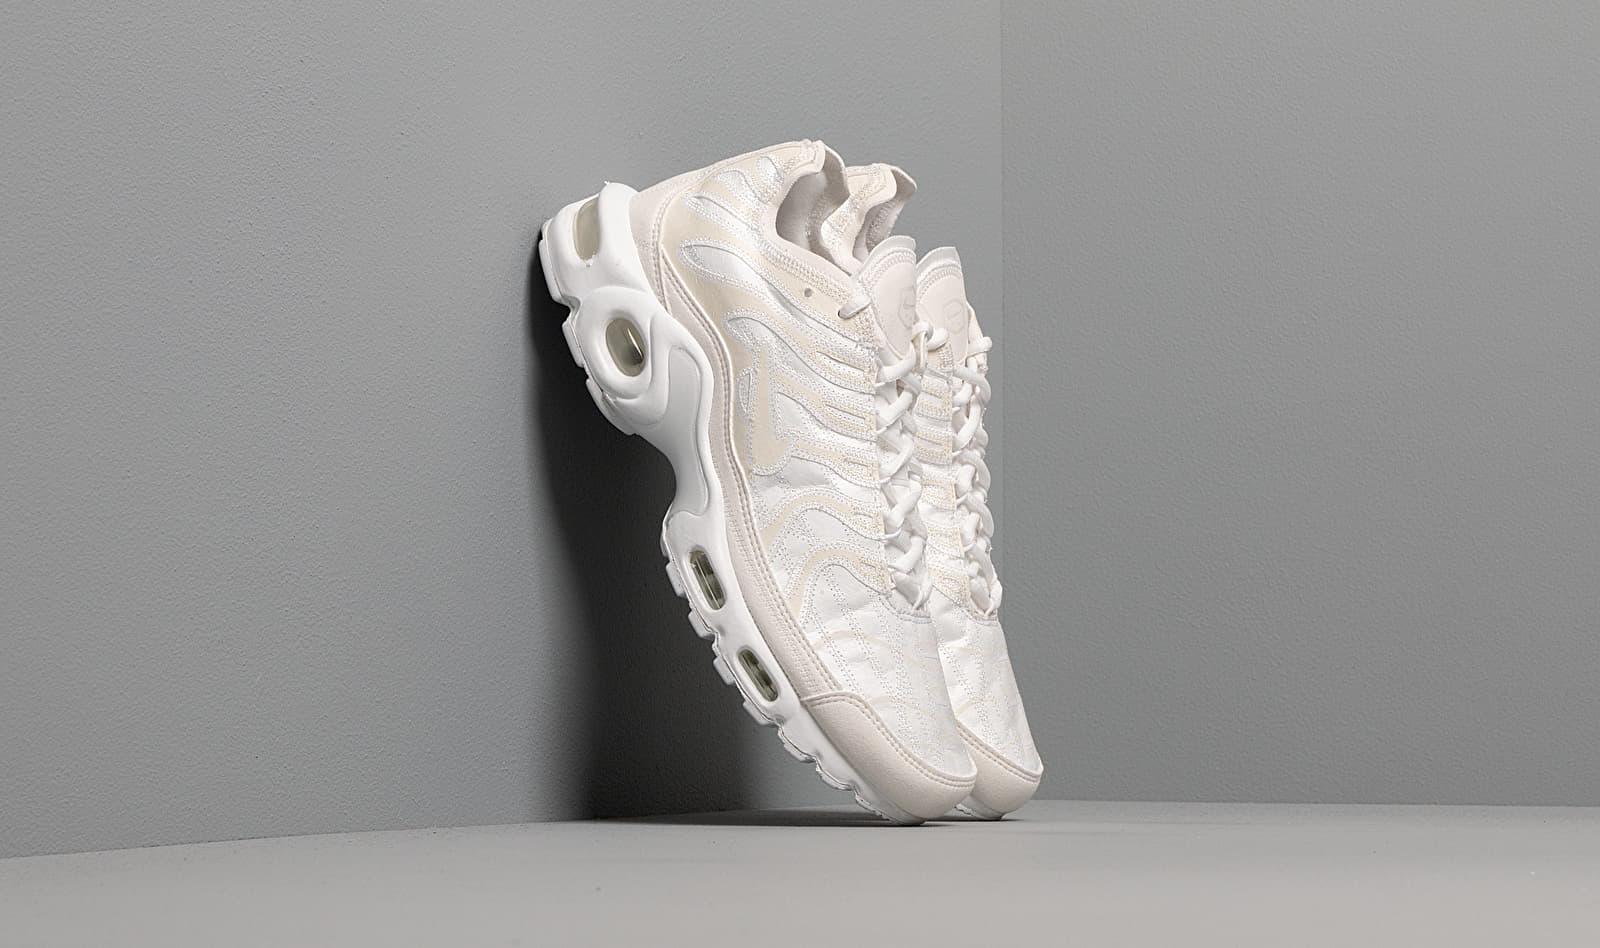 Nike Air Max Plus Decon White/ White-White CD0882-100